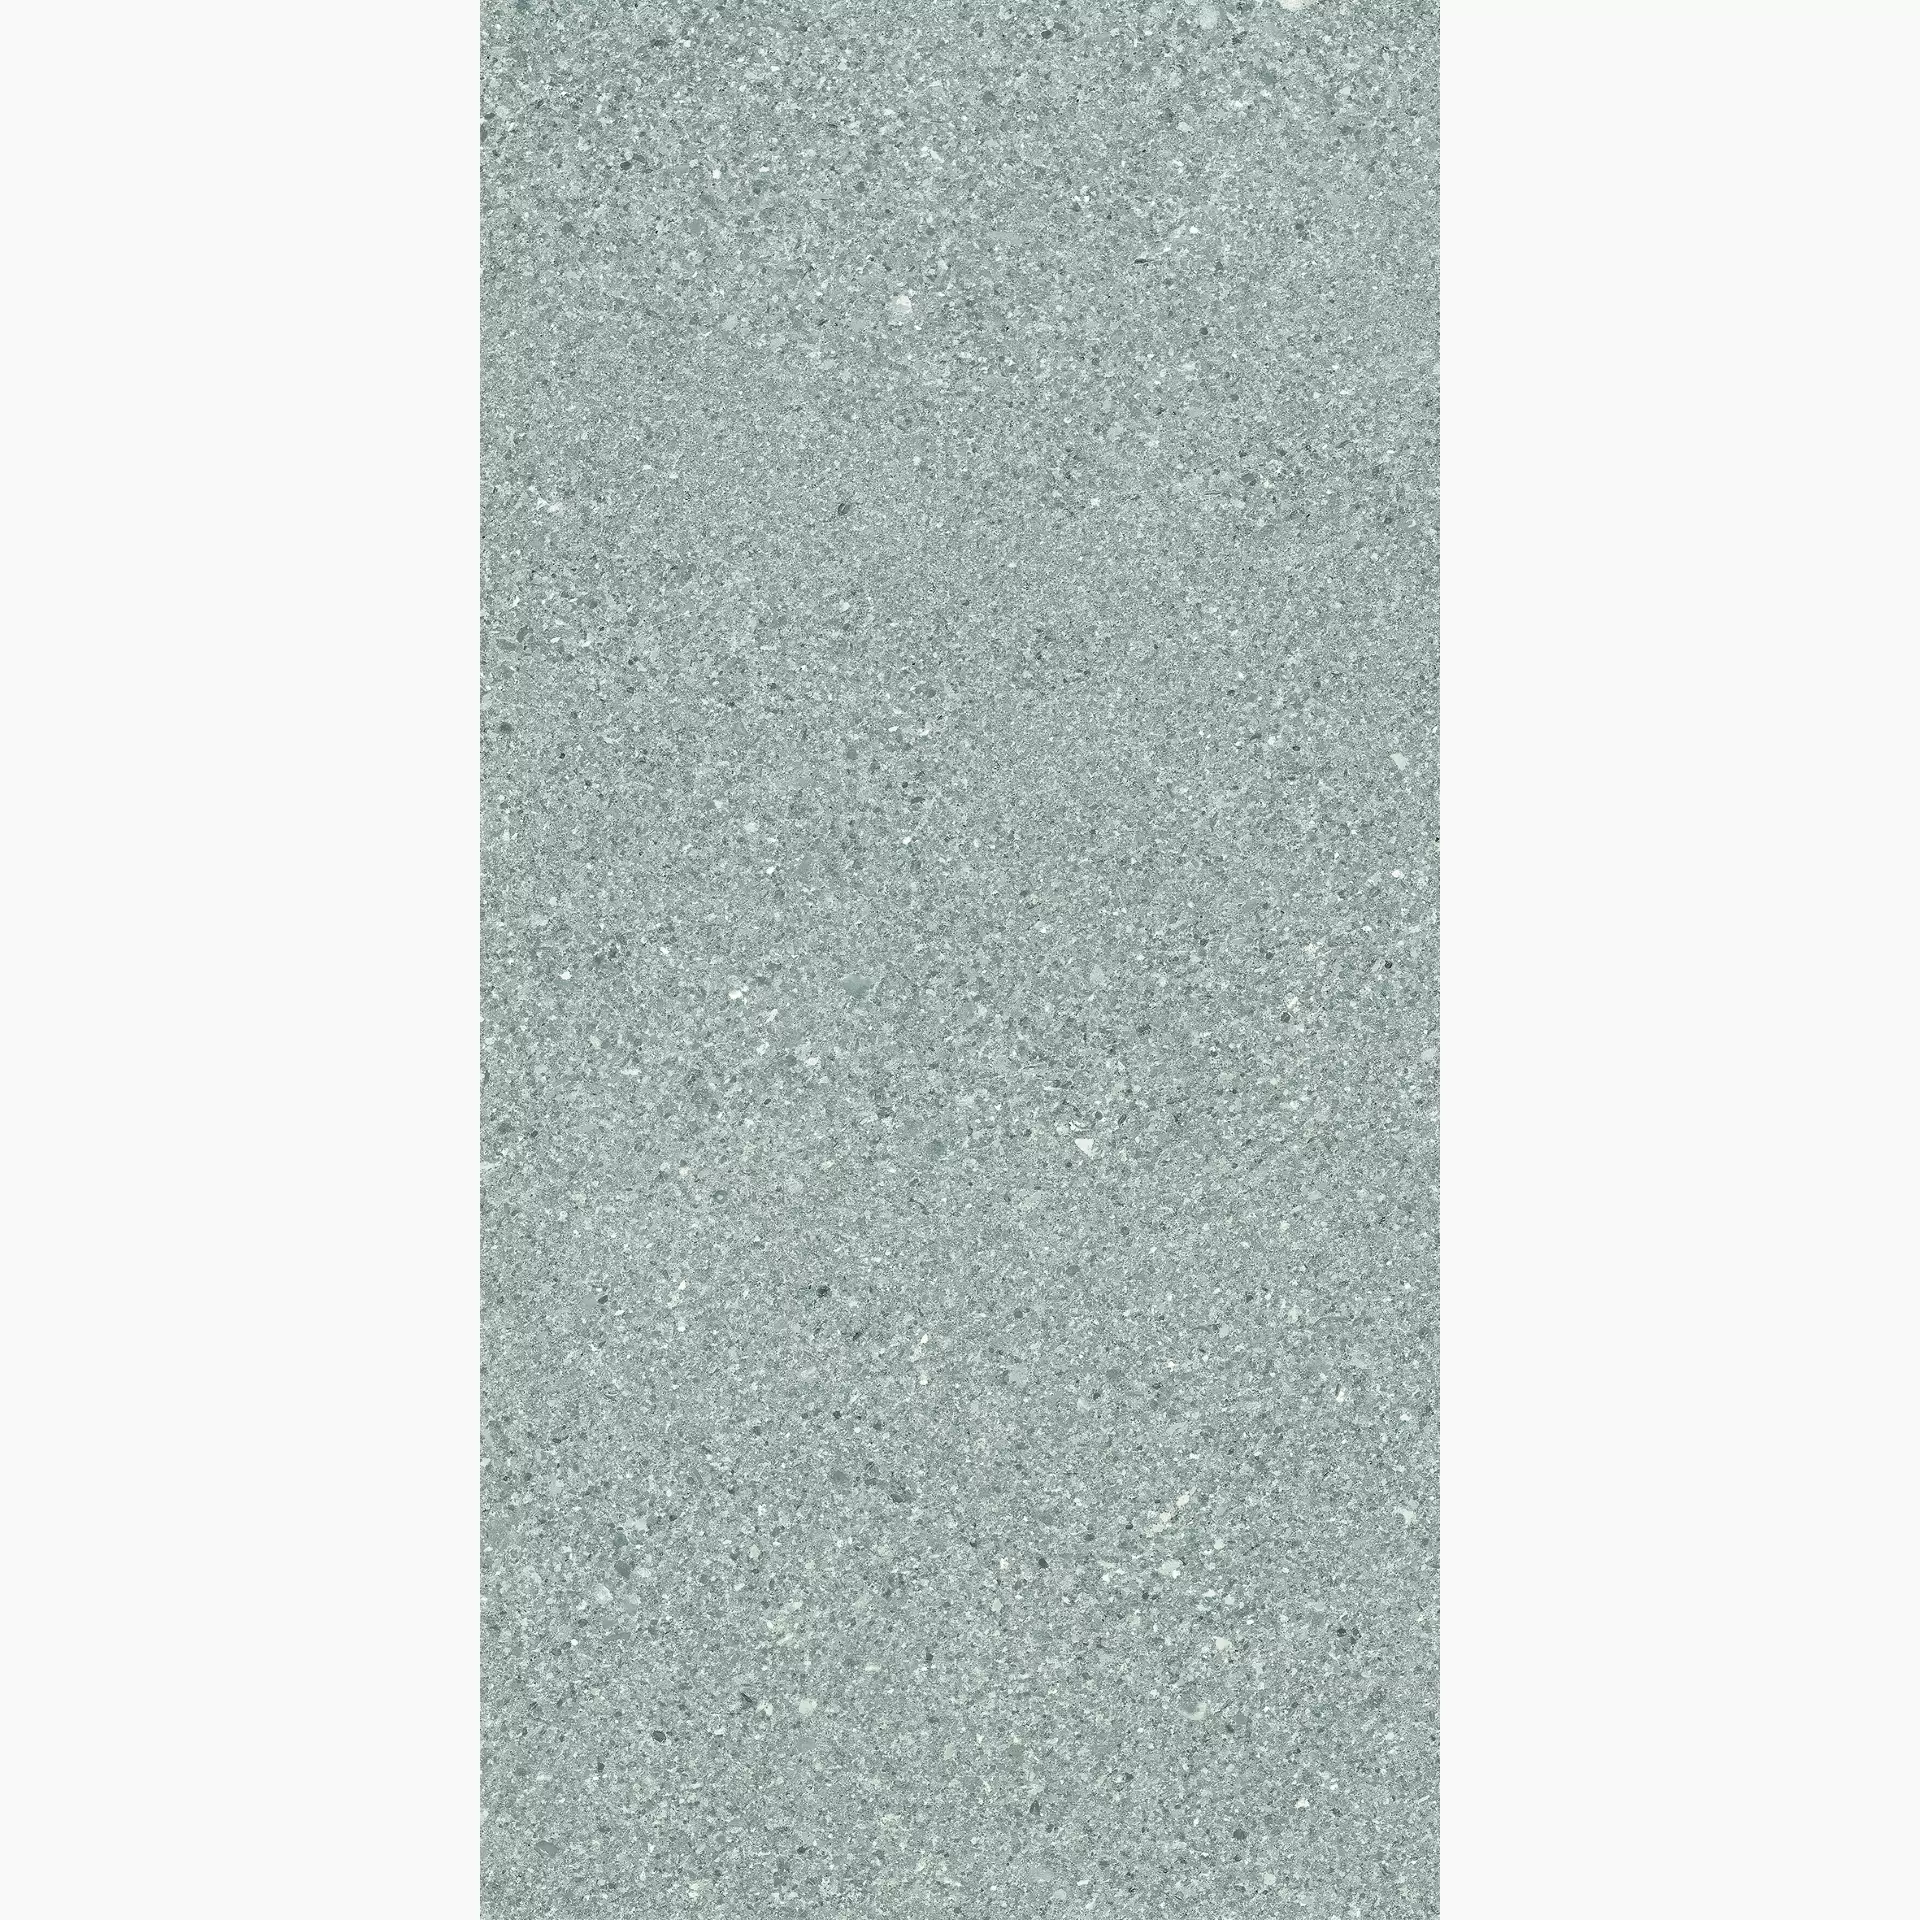 Ergon Grain Stone Fine Grain Grey Naturale E09V 30x60cm rectified 9,5mm